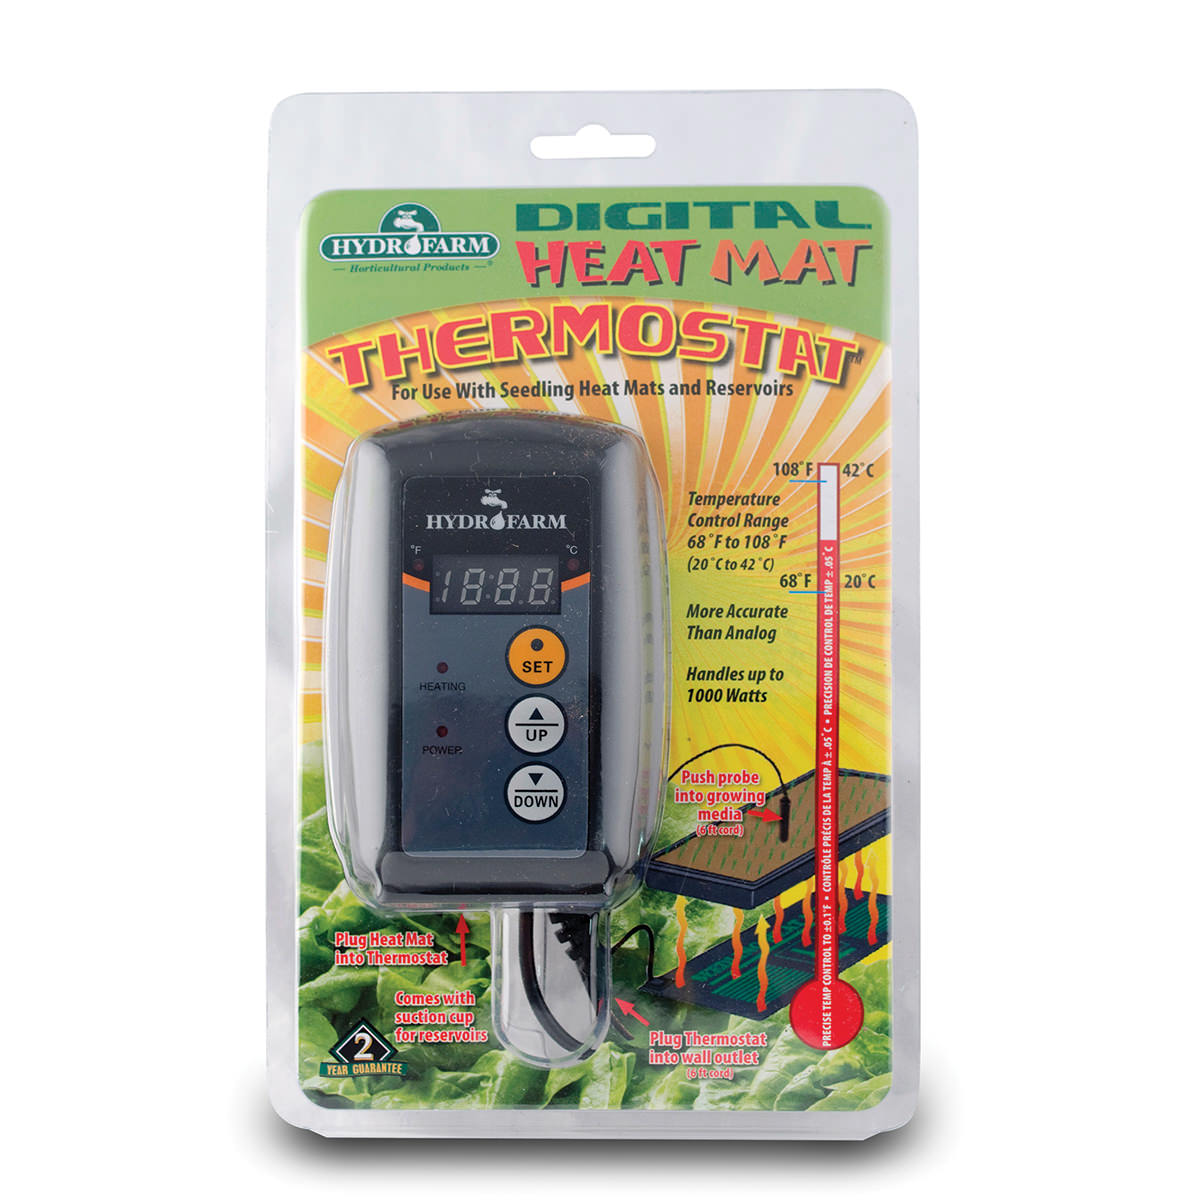 Hydrofarm Digital Heat Mat Thermostat